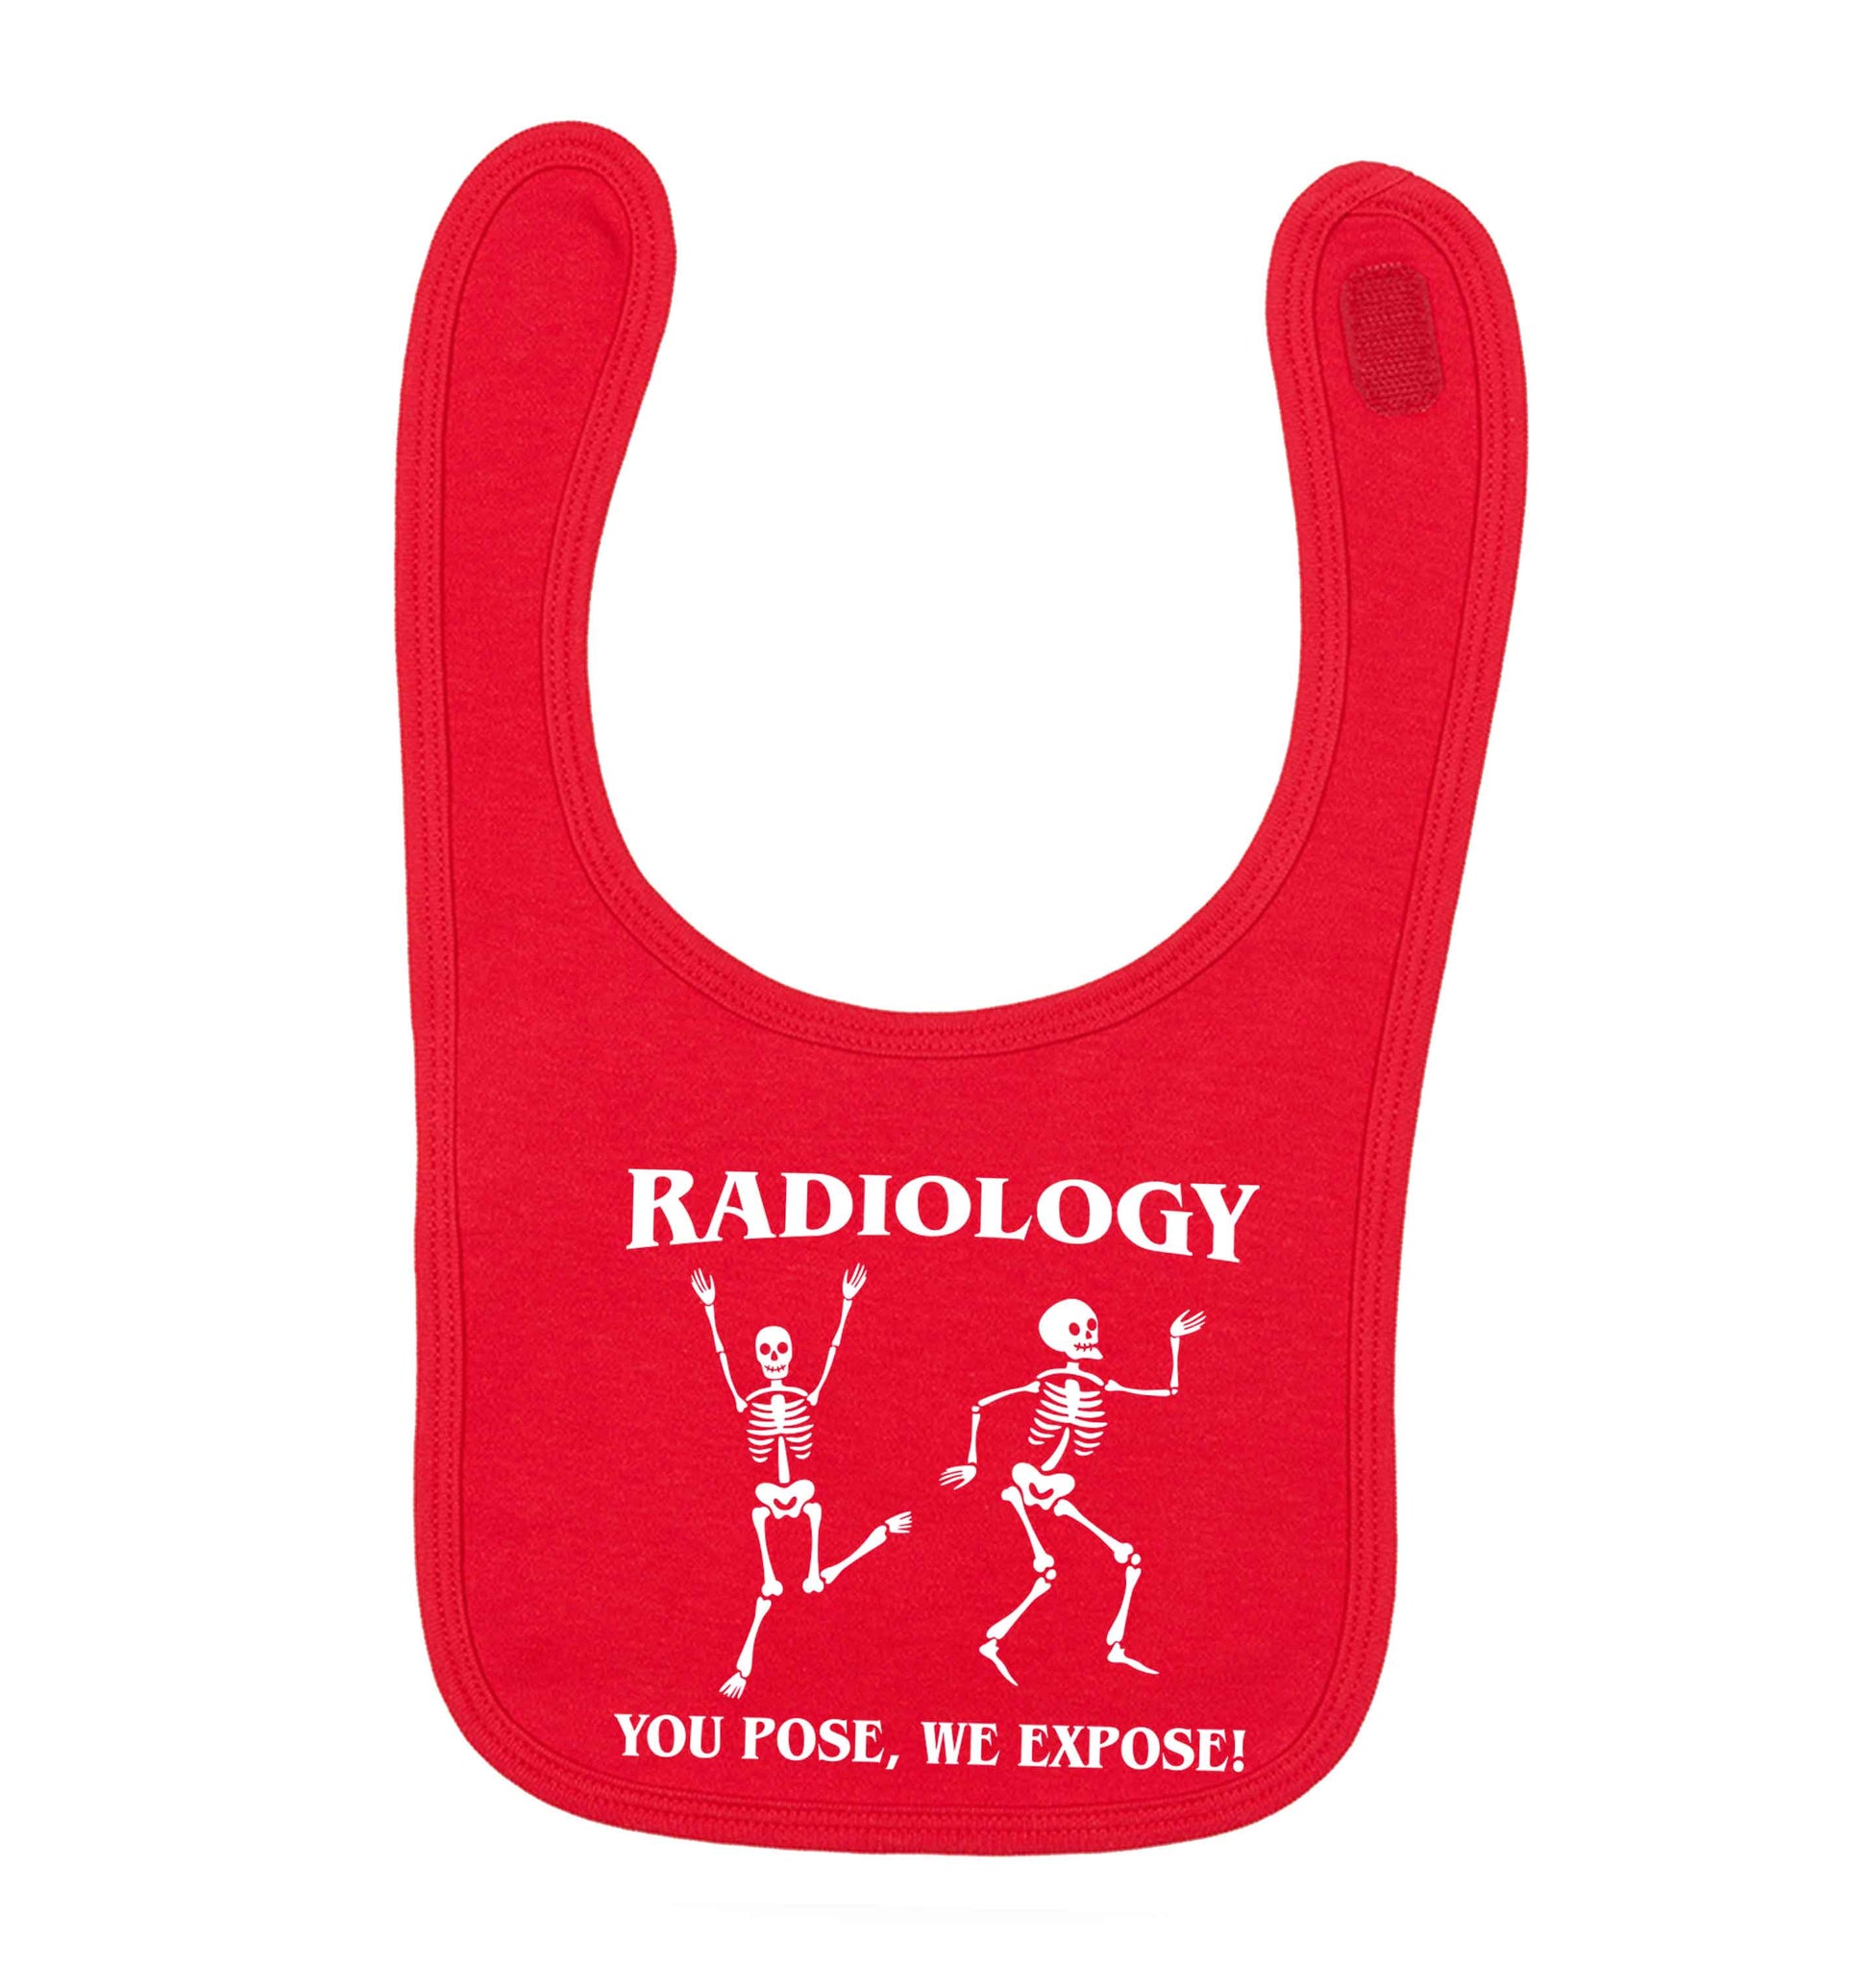 Radiology you pose we expose red baby bib